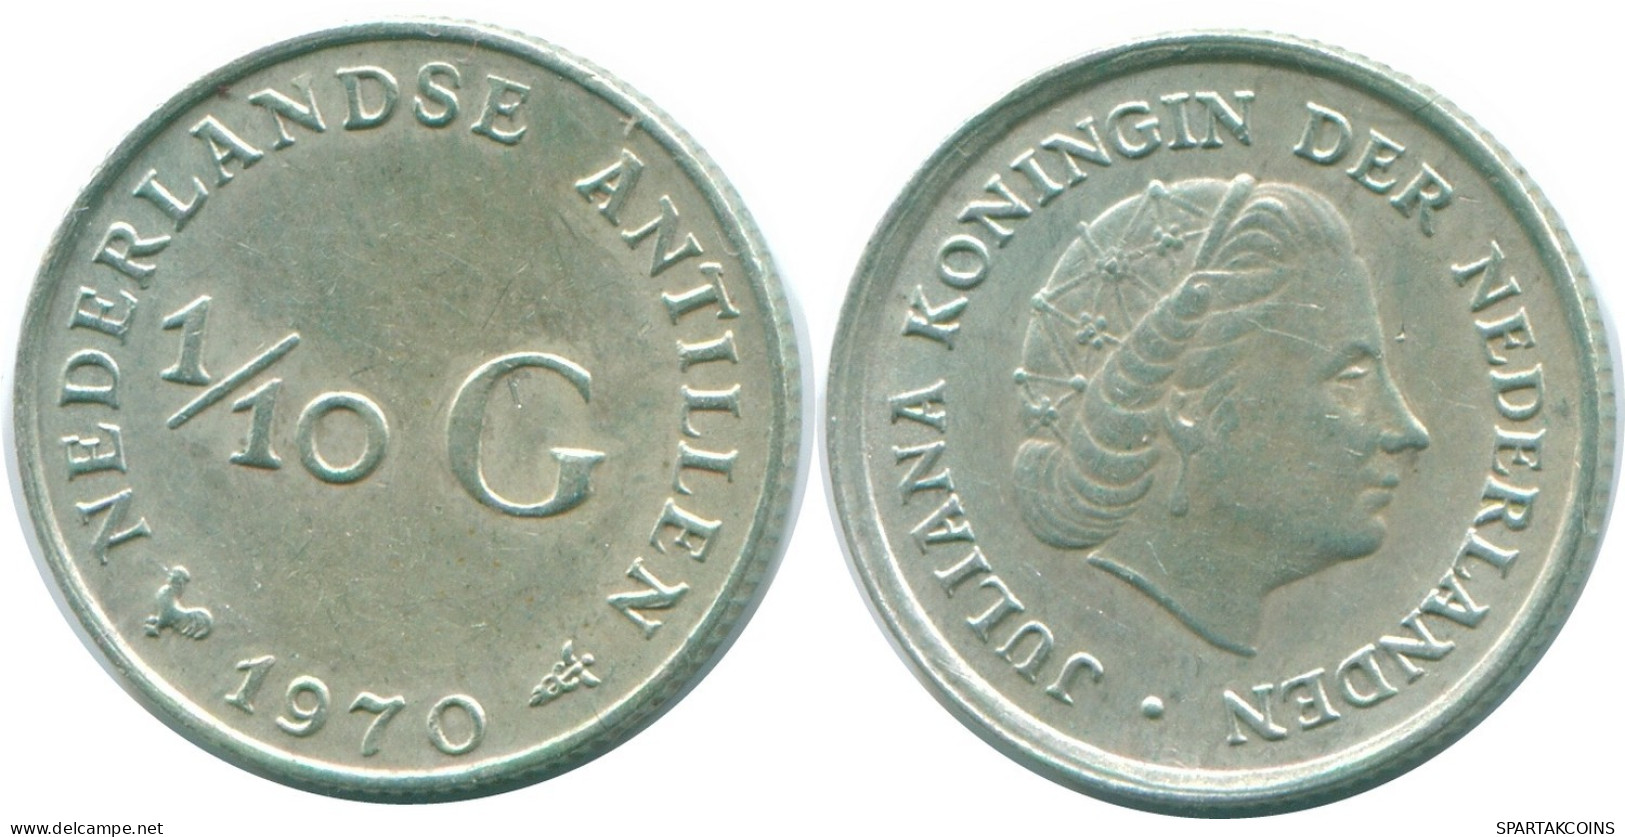 1/10 GULDEN 1970 NIEDERLÄNDISCHE ANTILLEN SILBER Koloniale Münze #NL12958.3.D.A - Nederlandse Antillen